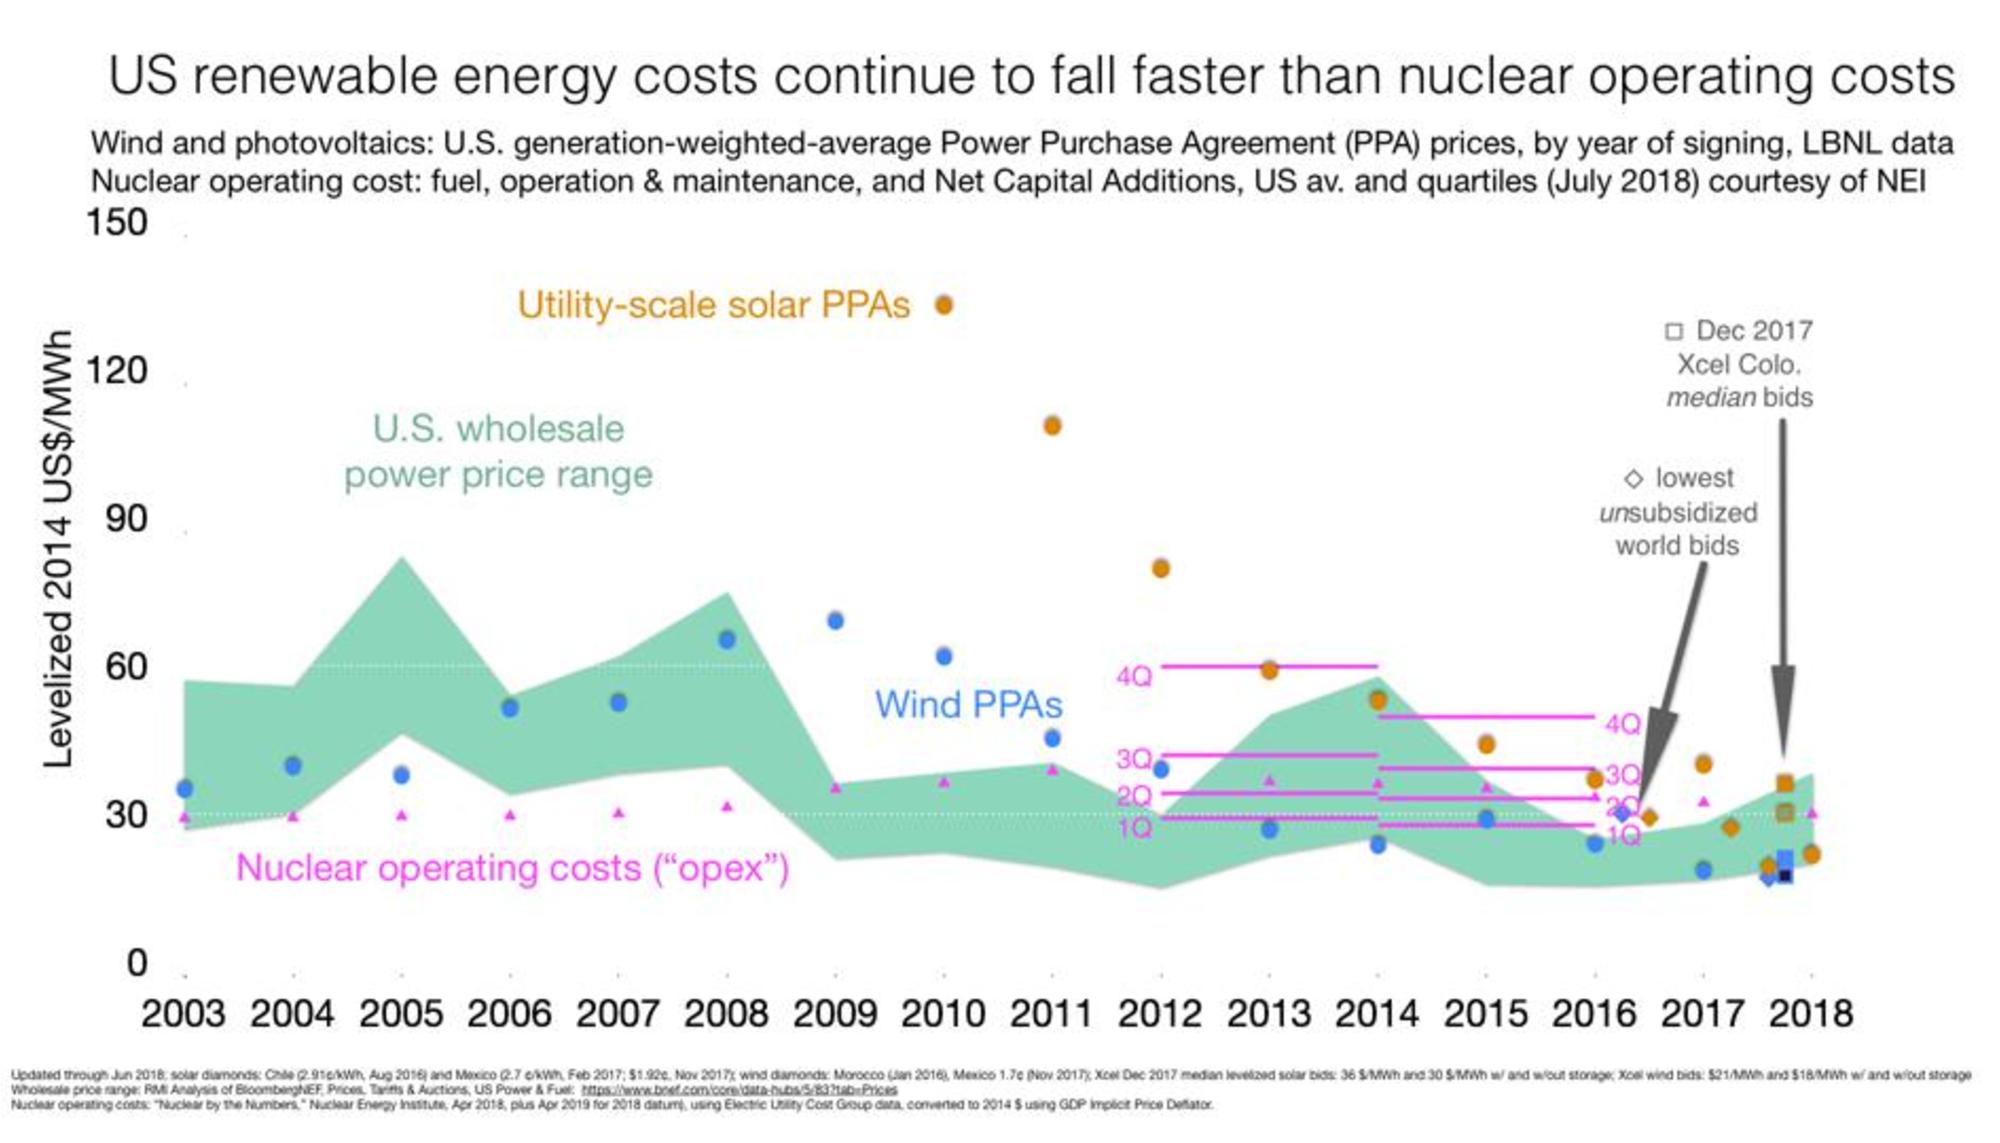 Costes de renovables comparados con la nuclear en EEUU. Fuente: Beyond Nuclear International